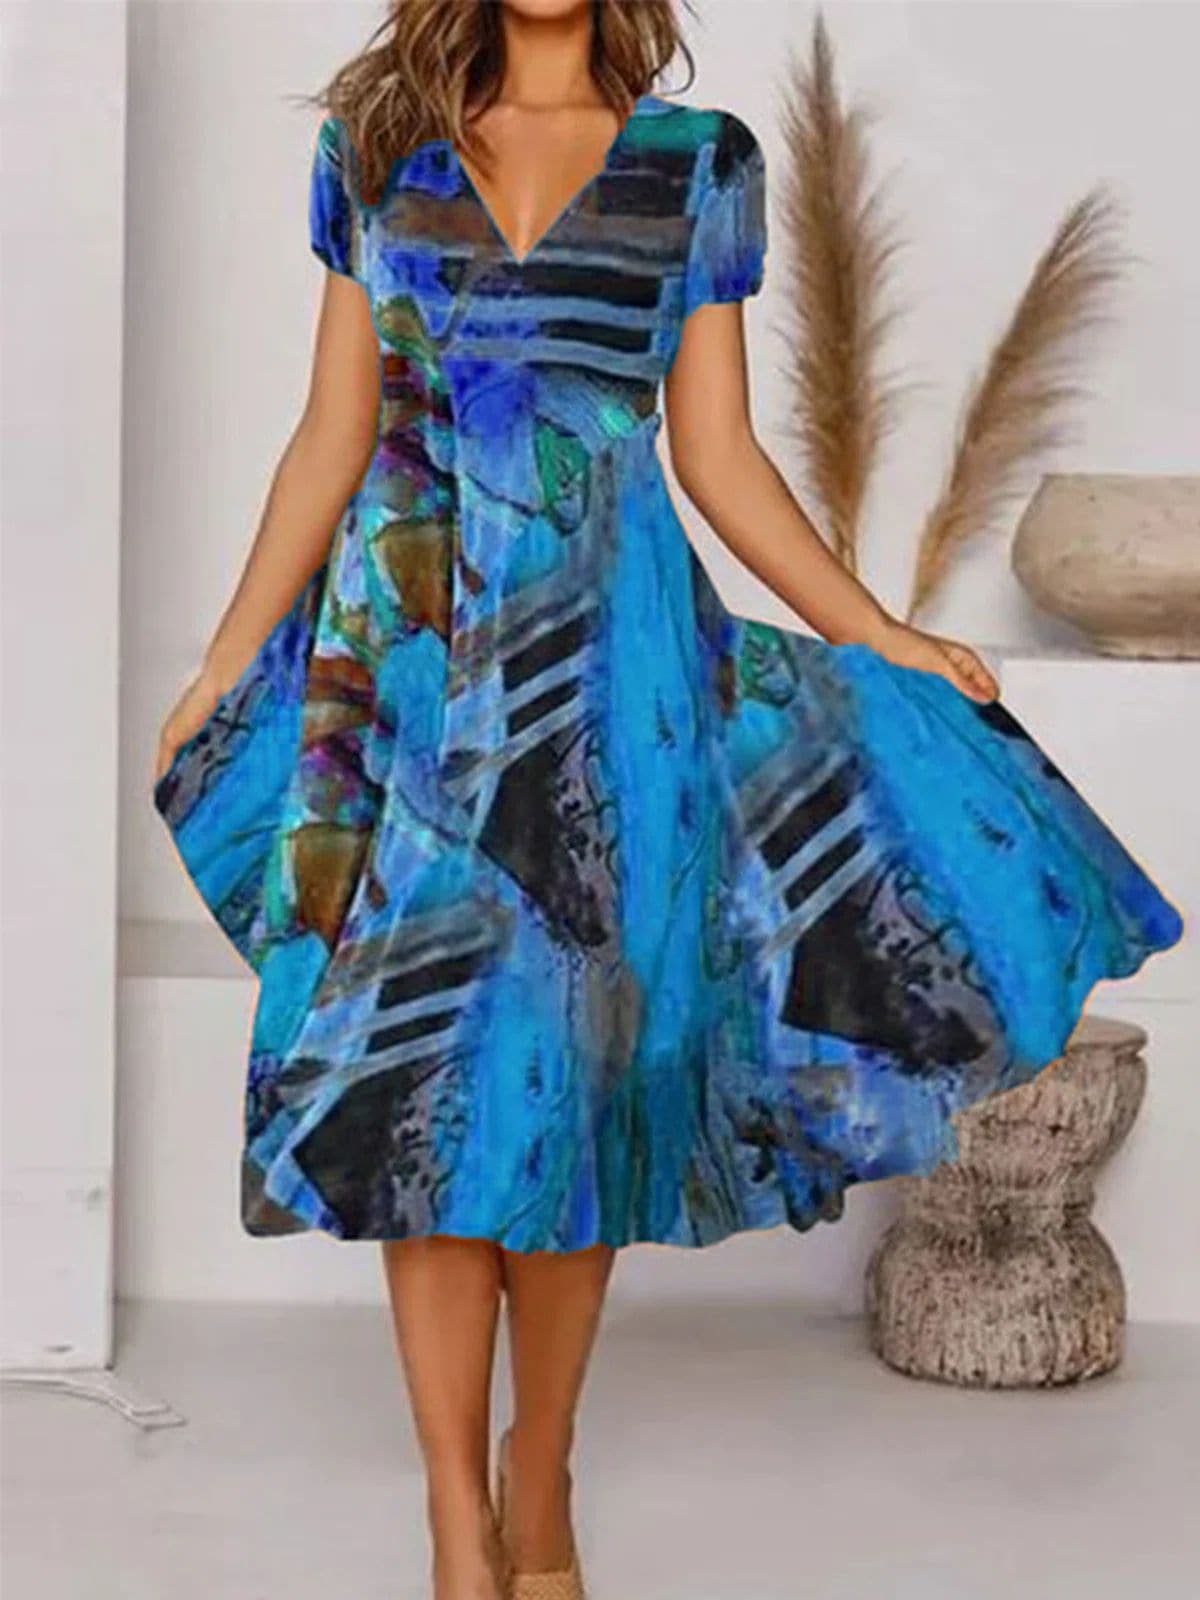 Bodil - Elegant klänning av hög kvalitet